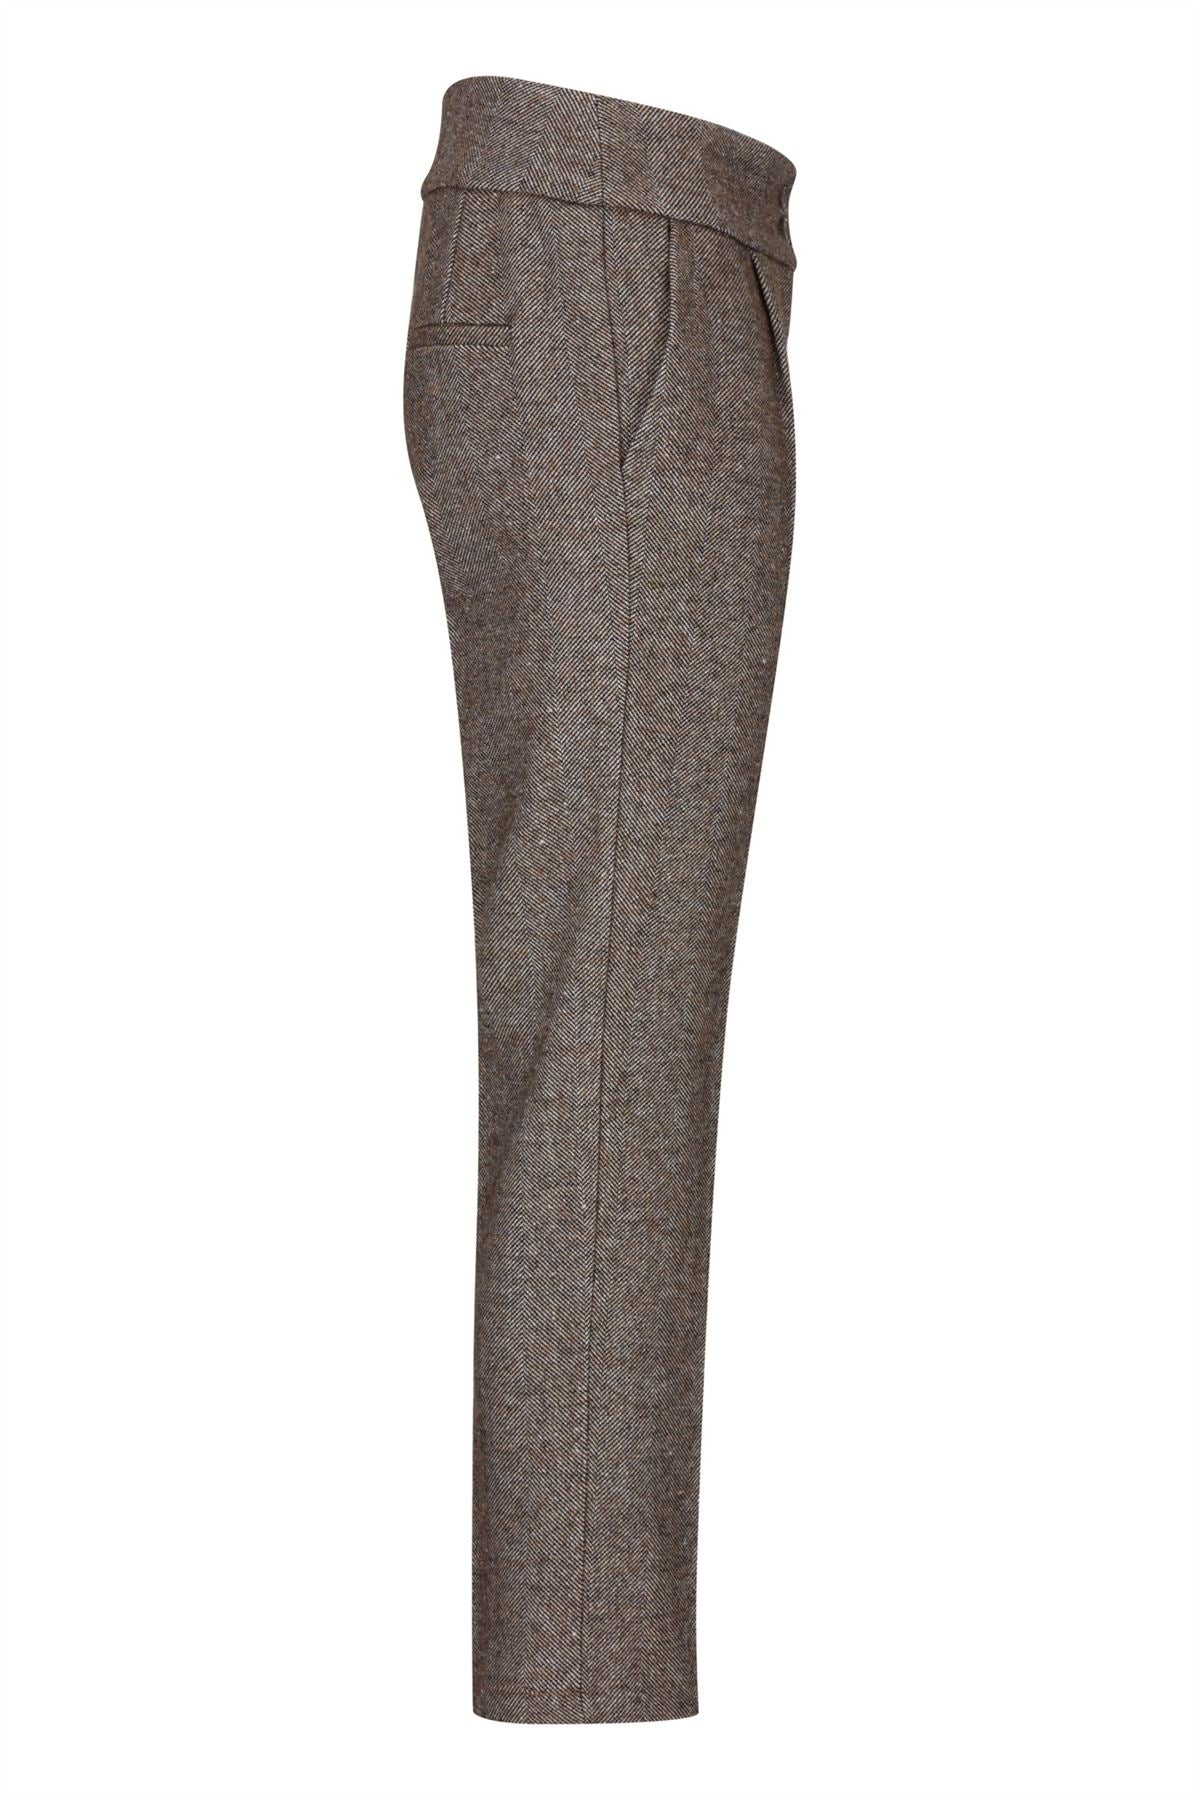 Womens Tweed Trousers 1920s Vintage Blinders Tan Brown Herringbone Tailored Fit